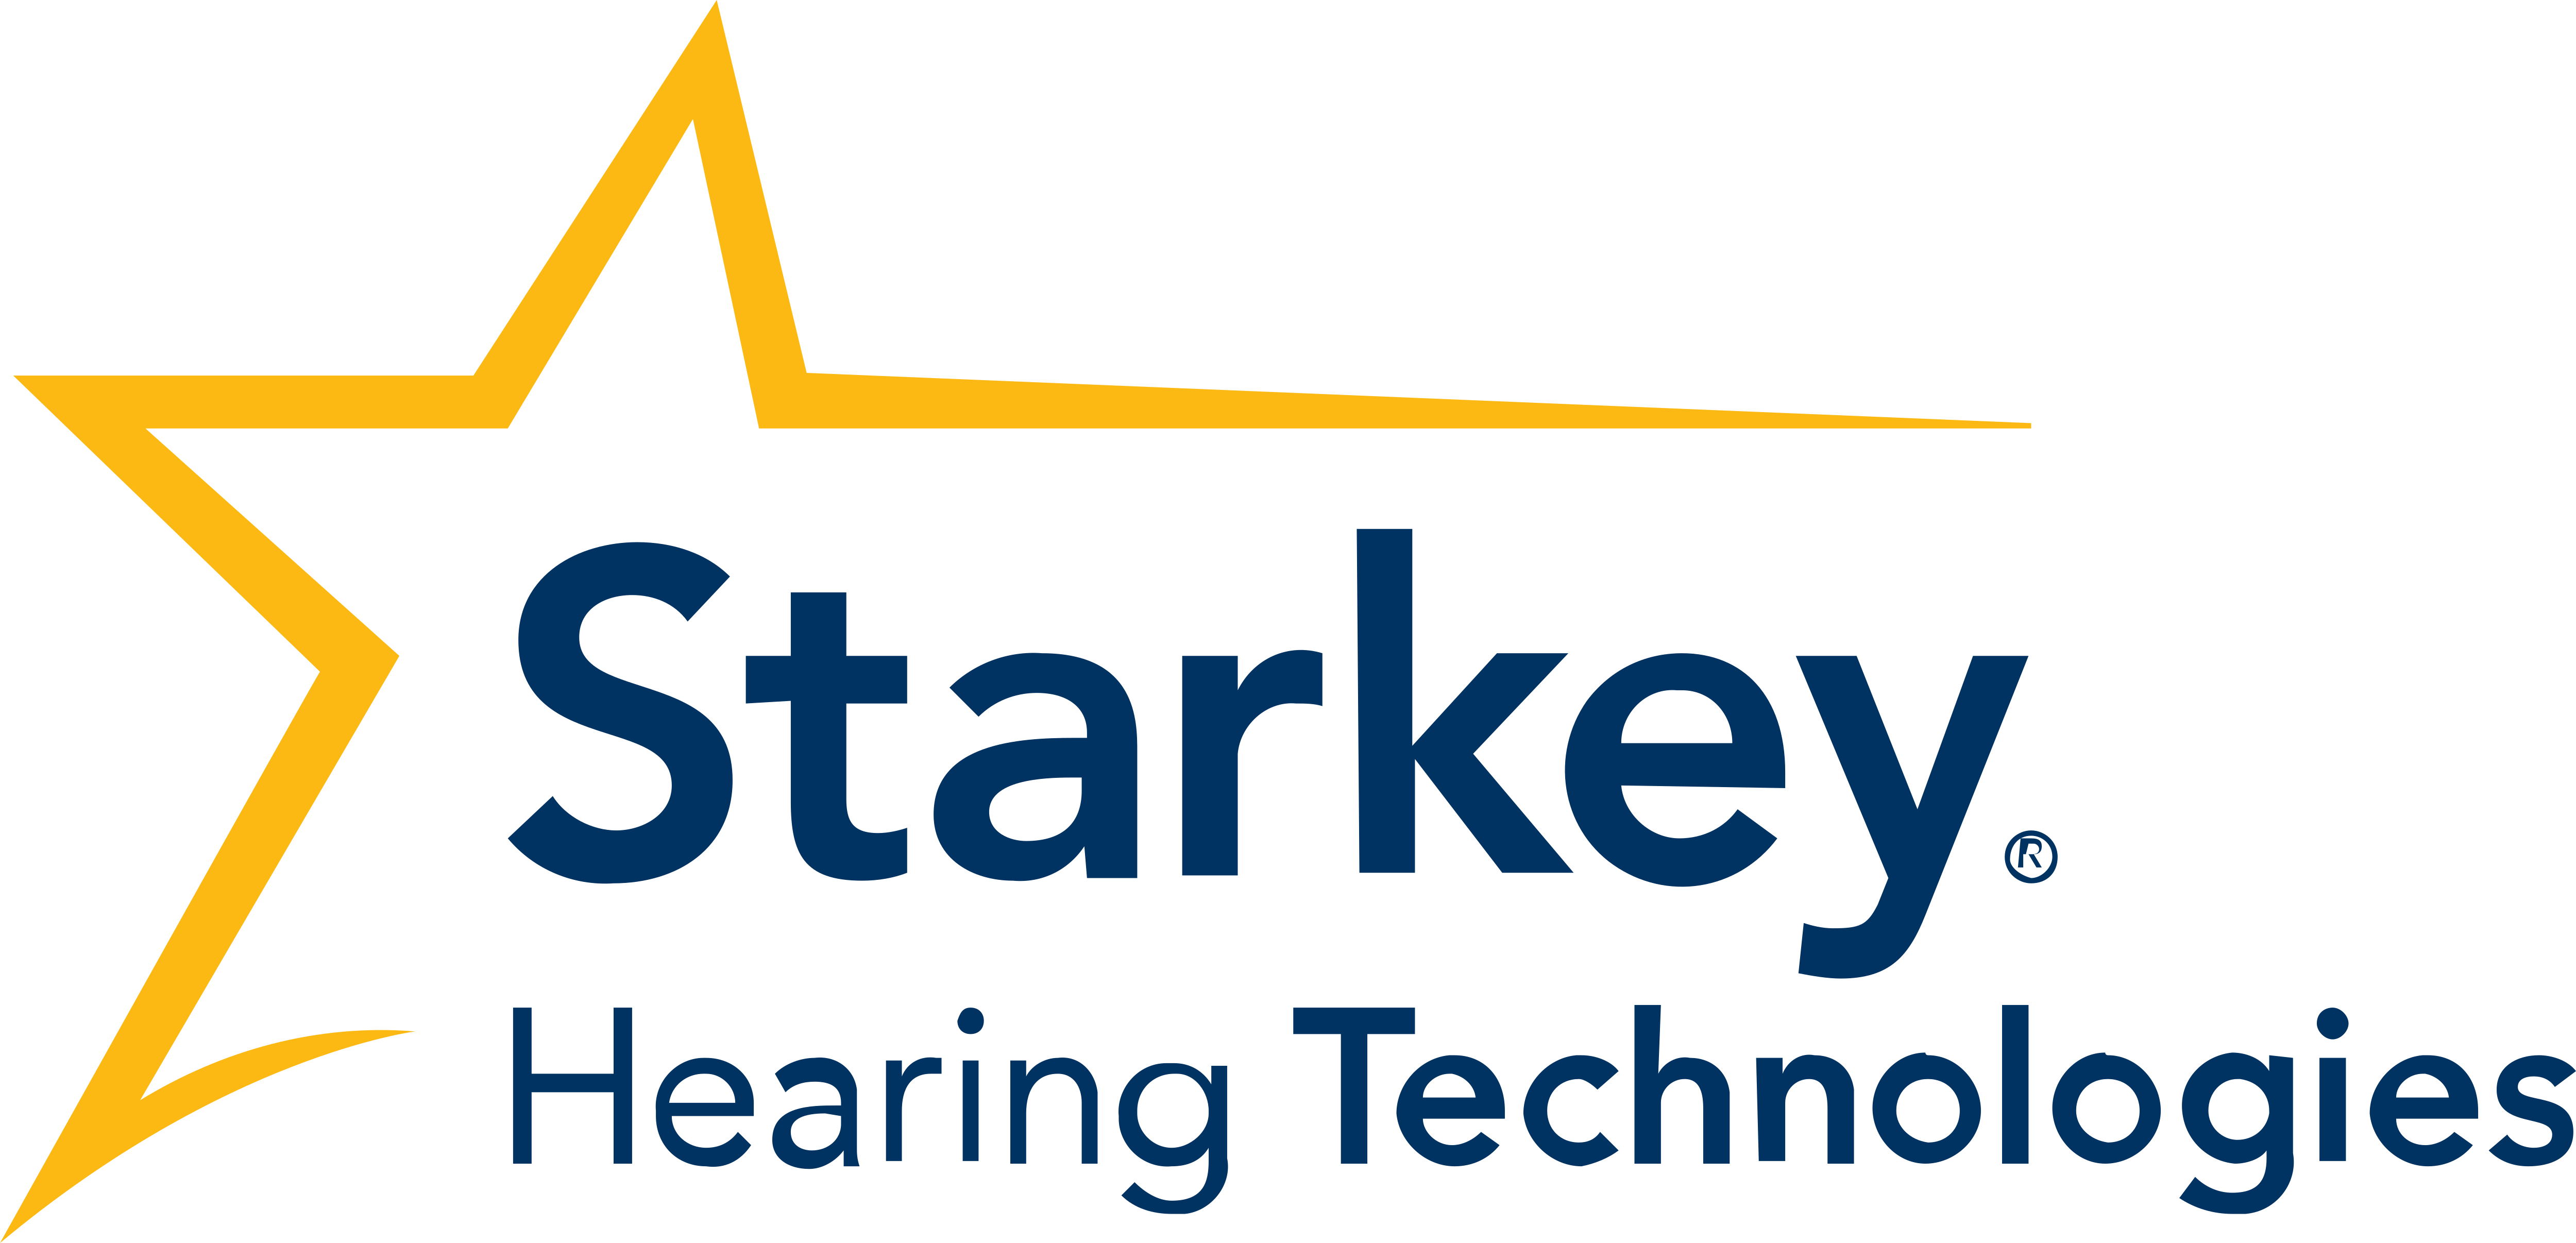 Starkey brand image